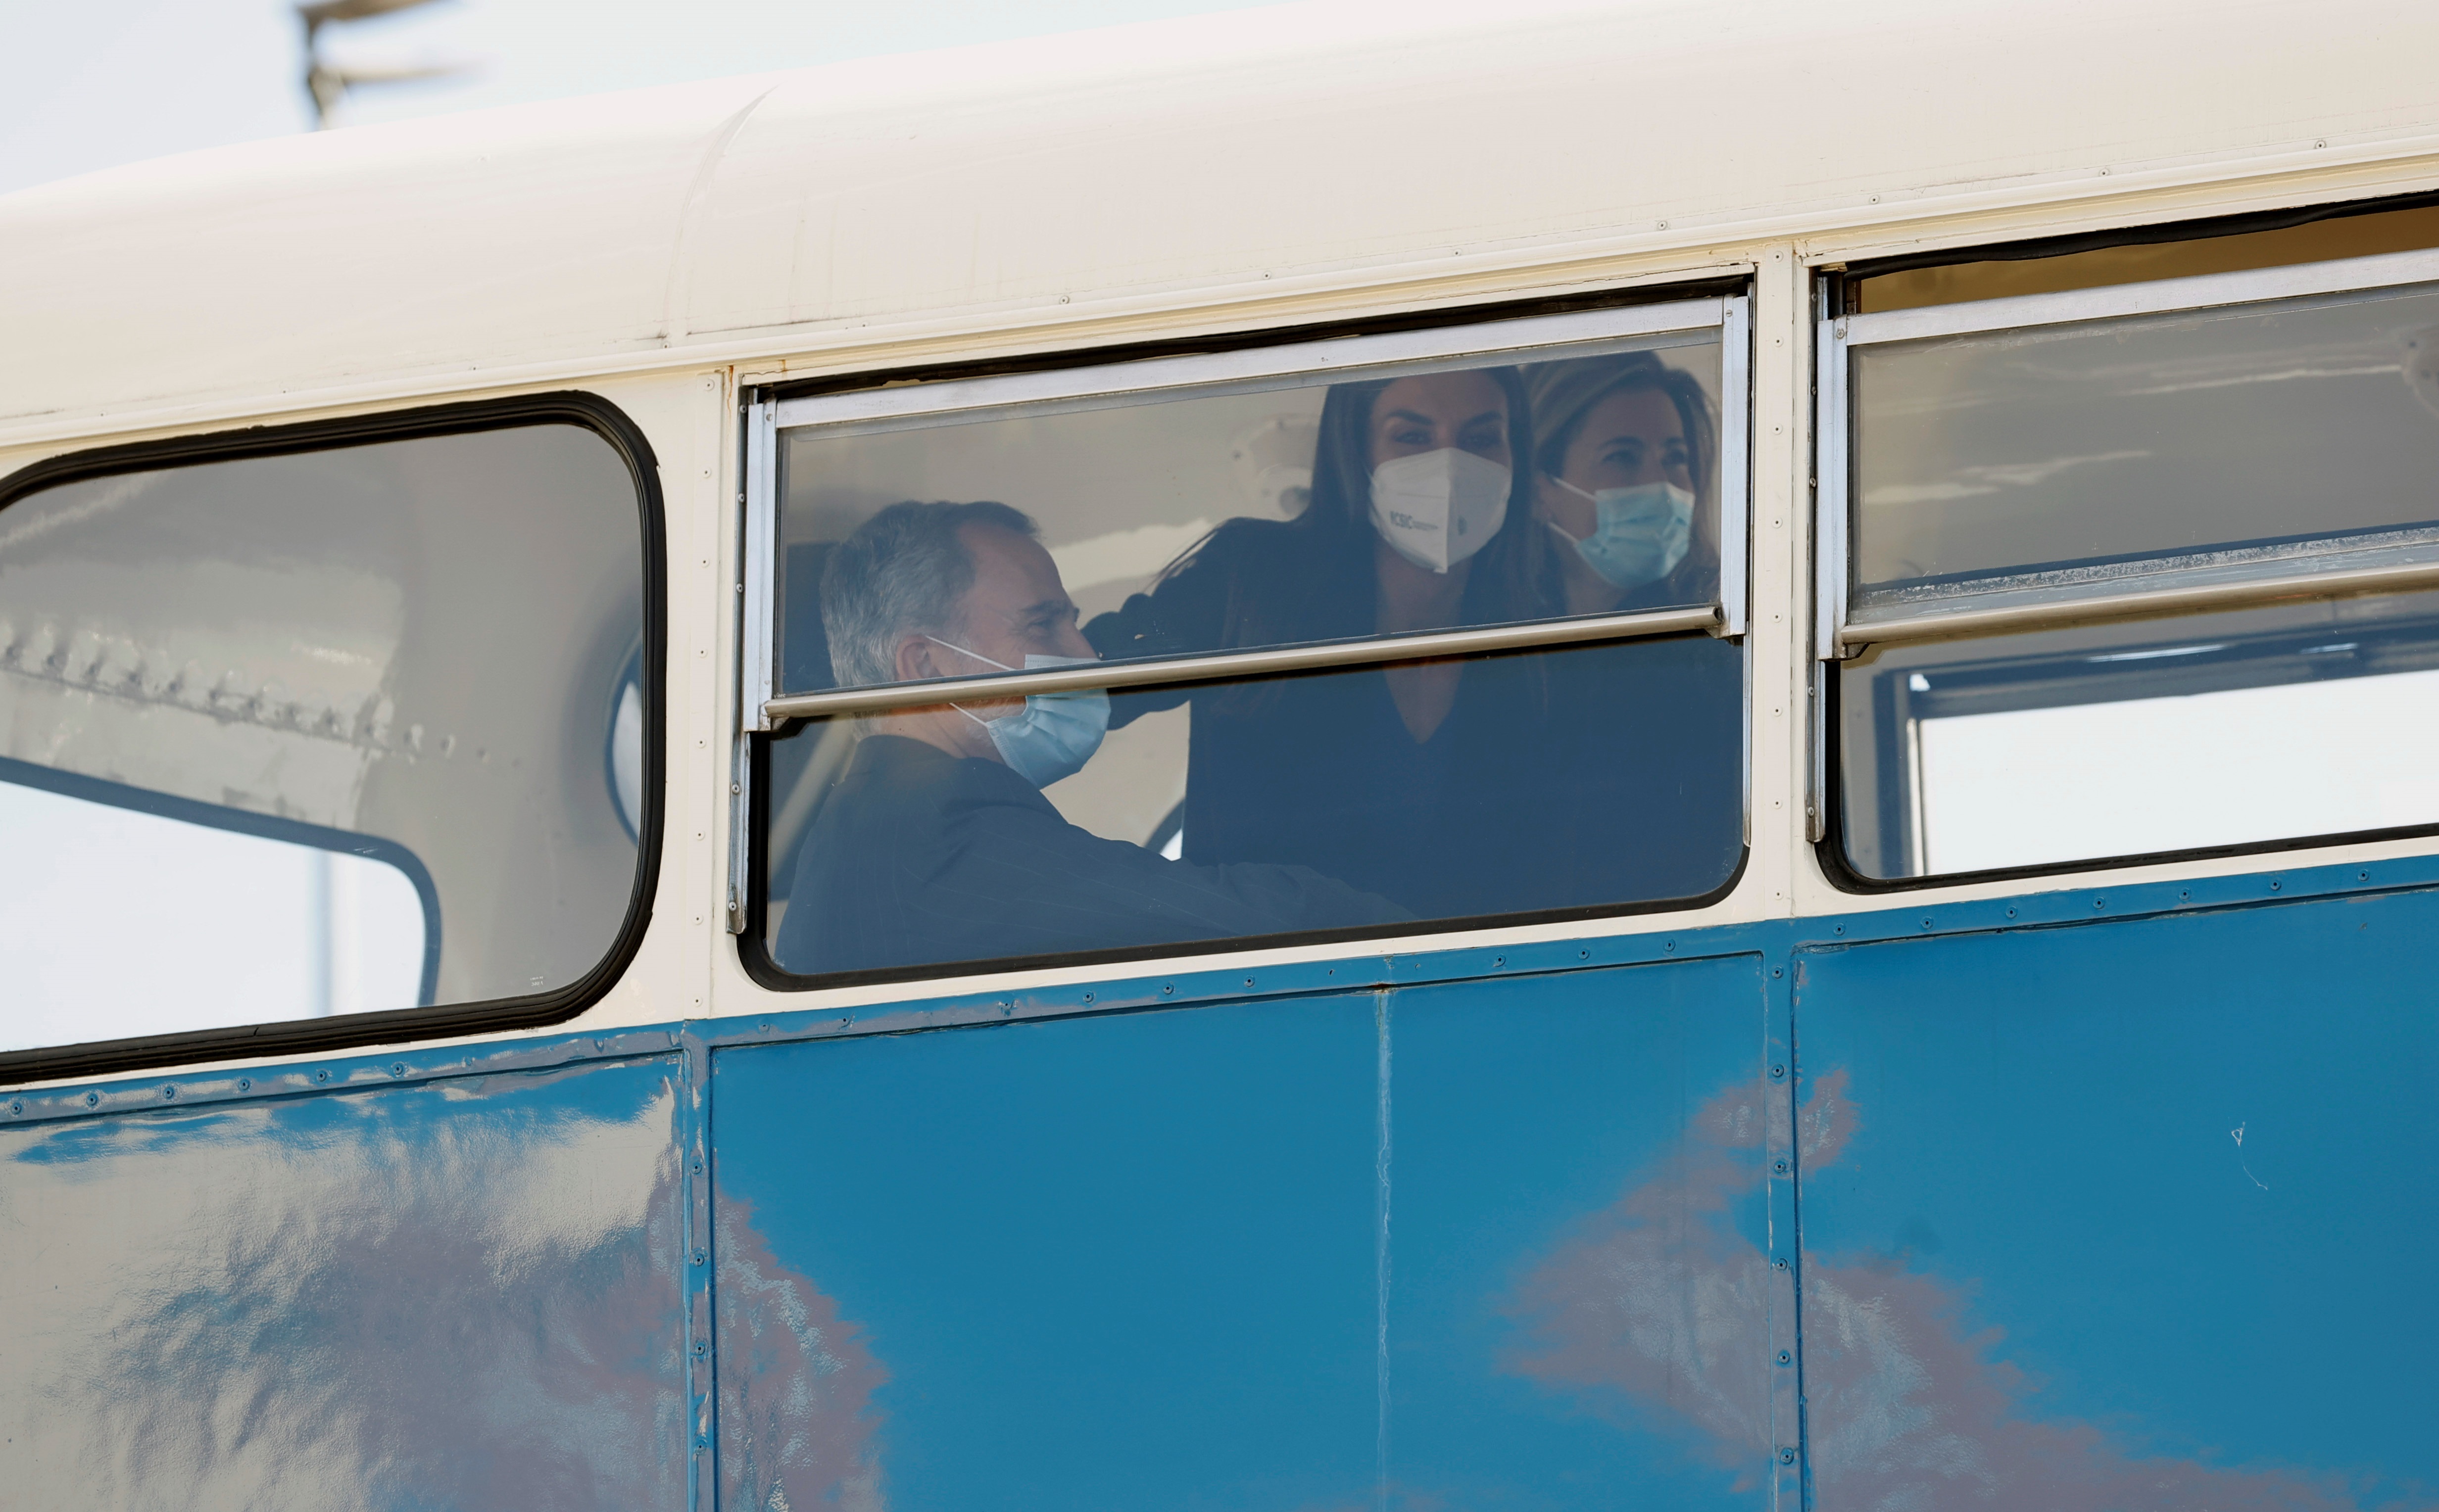 Los reyes de España se trasladan en autobús para asistir a un acto oficial (Fotos)